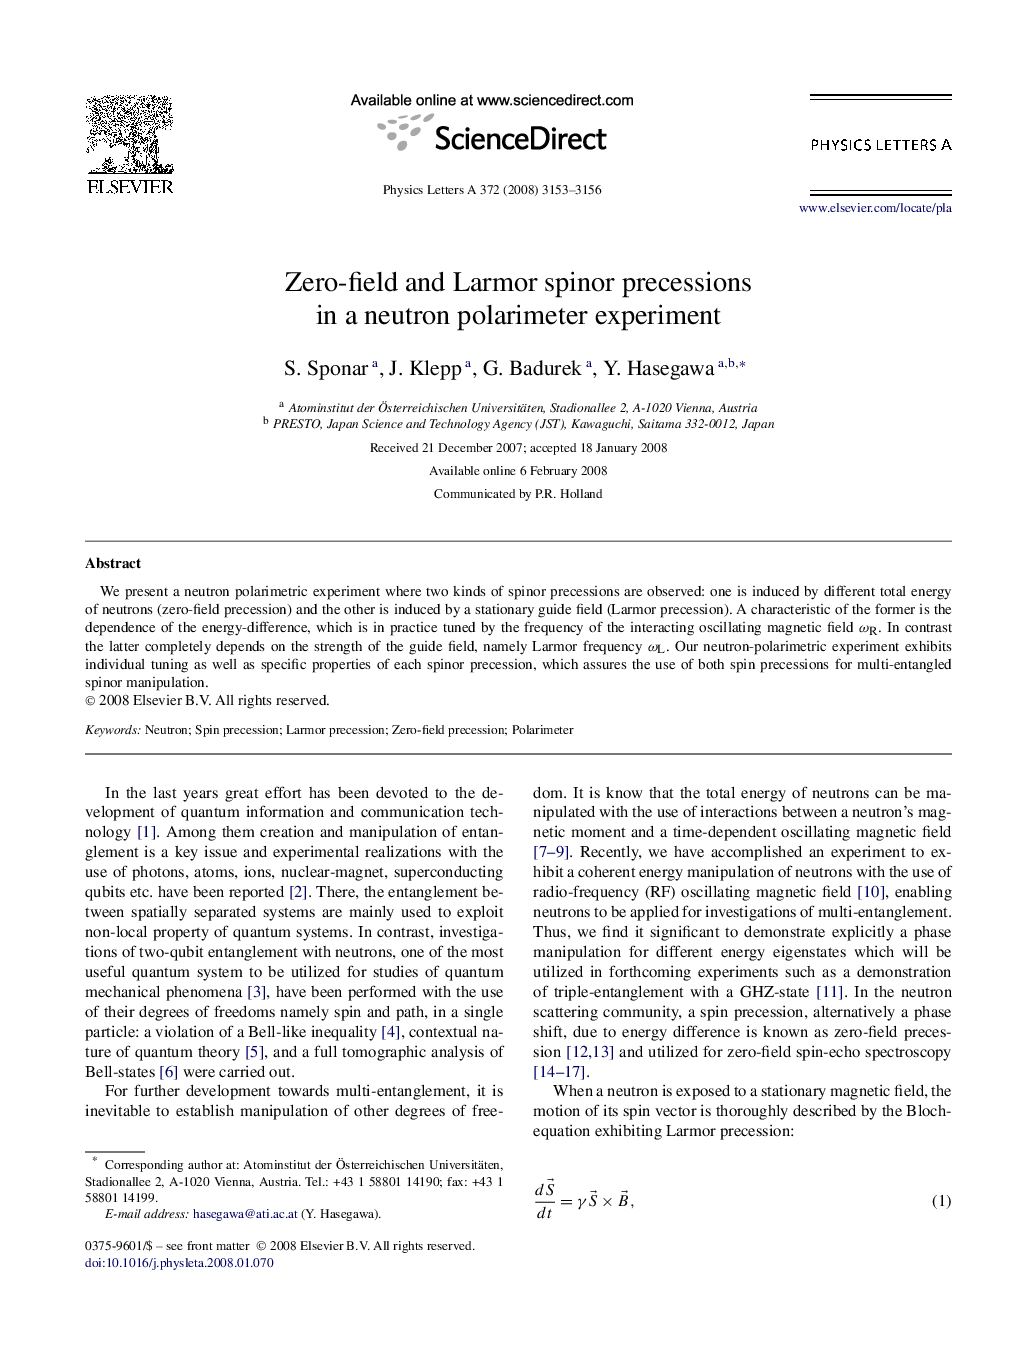 Zero-field and Larmor spinor precessions in a neutron polarimeter experiment